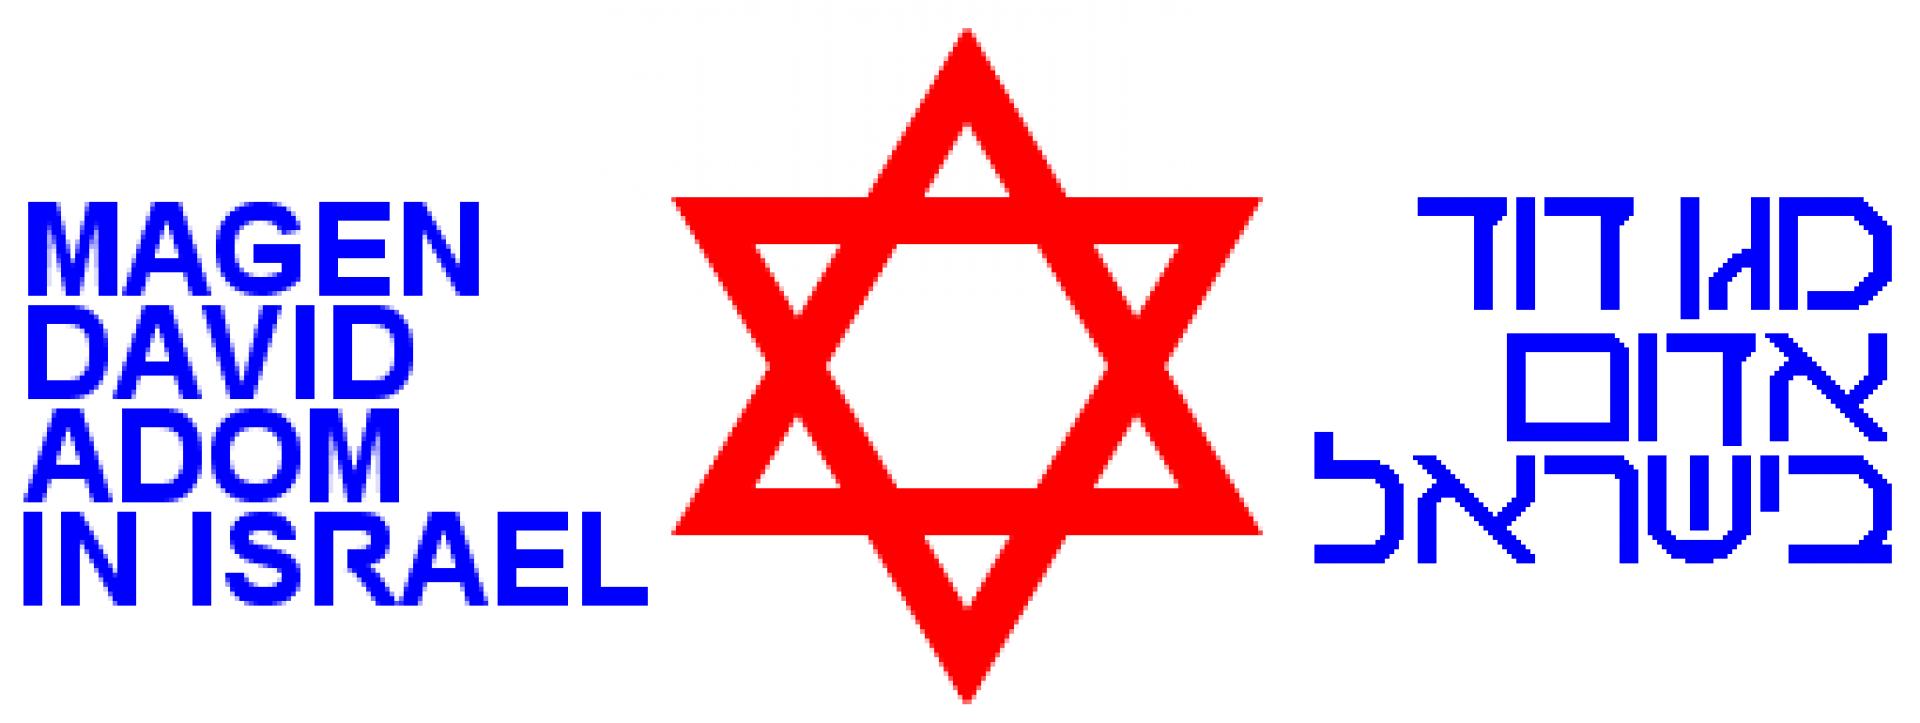 Logotipo de Maguén David Adom (hebreo: מגן דוד אדום, abreviado MDA)